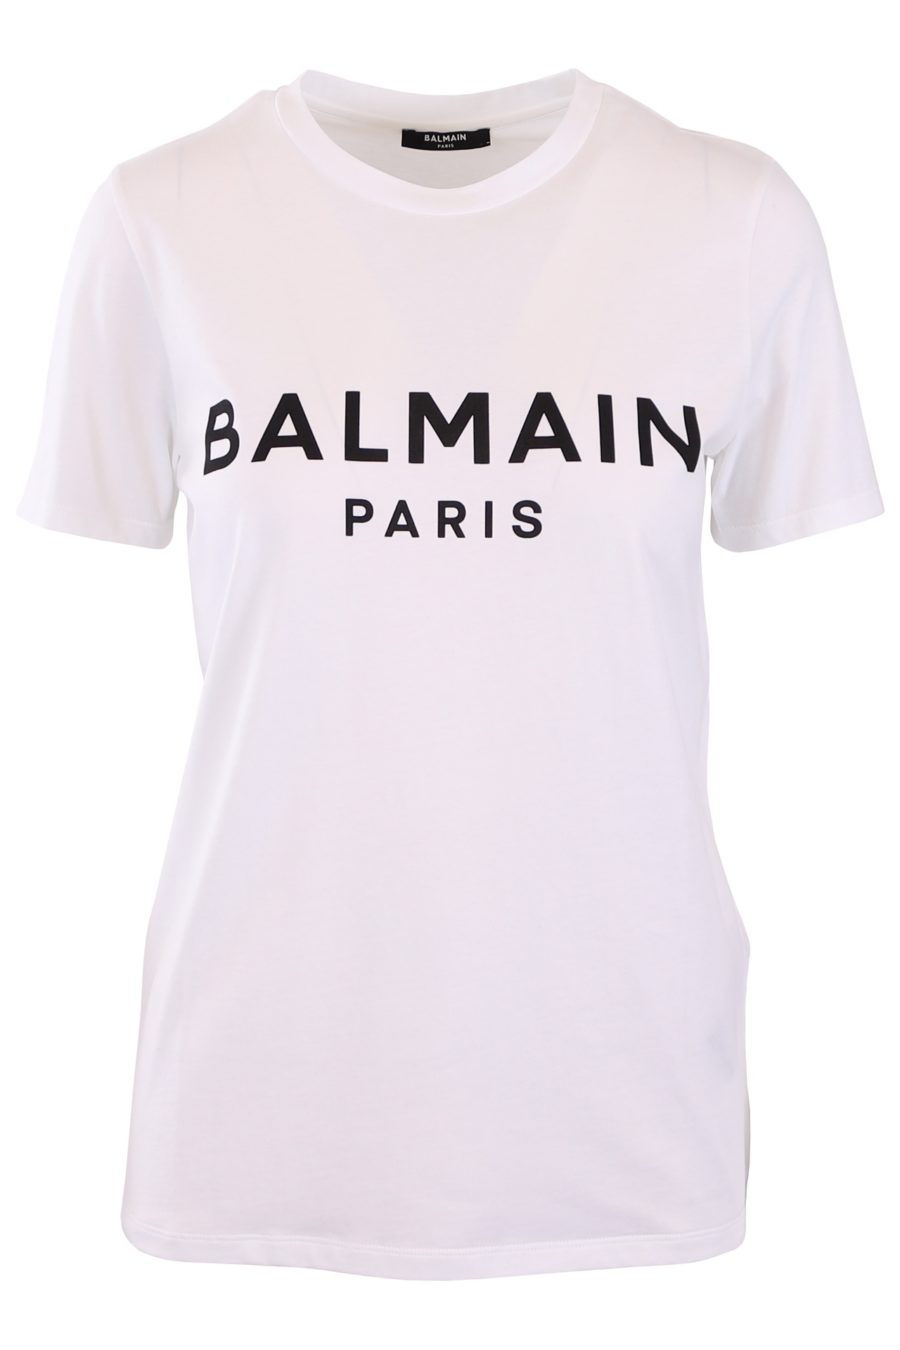 Camiseta Balmain blanca con logo negro - 93efad166cc4ad1ac55b6782490799cc9546ce54